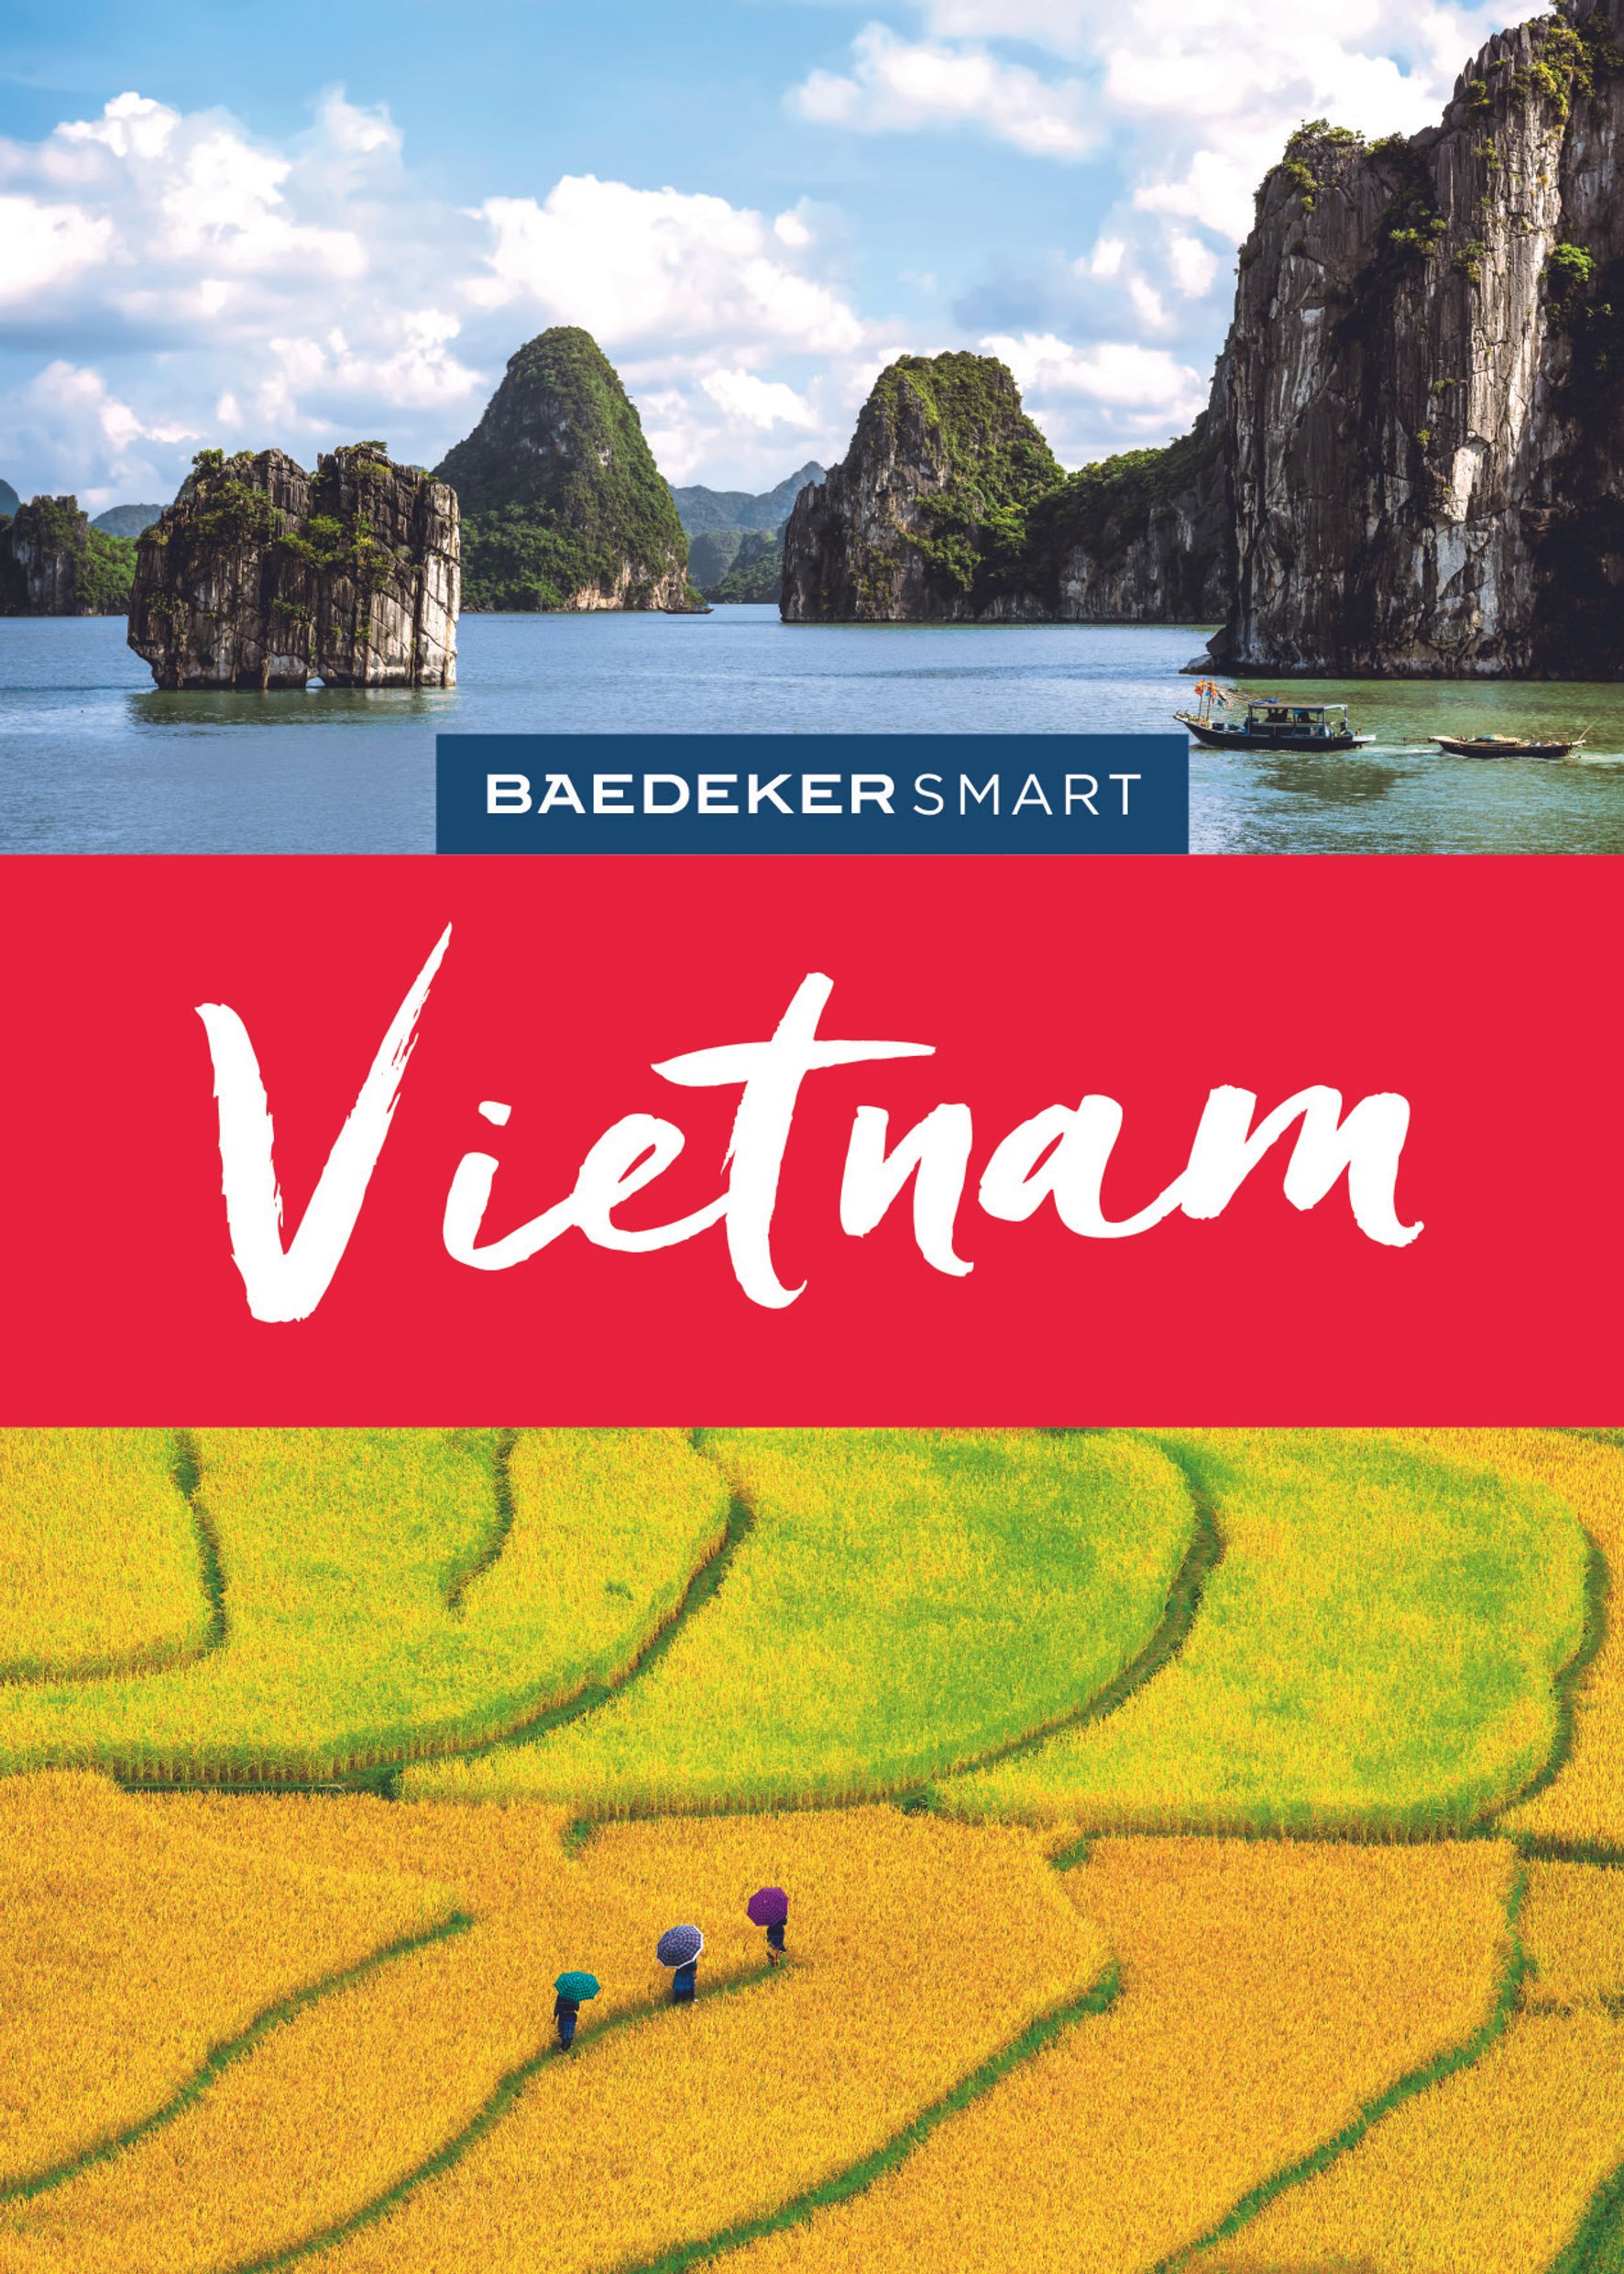 Baedeker Baedeker SMART Vietnam (eBook)